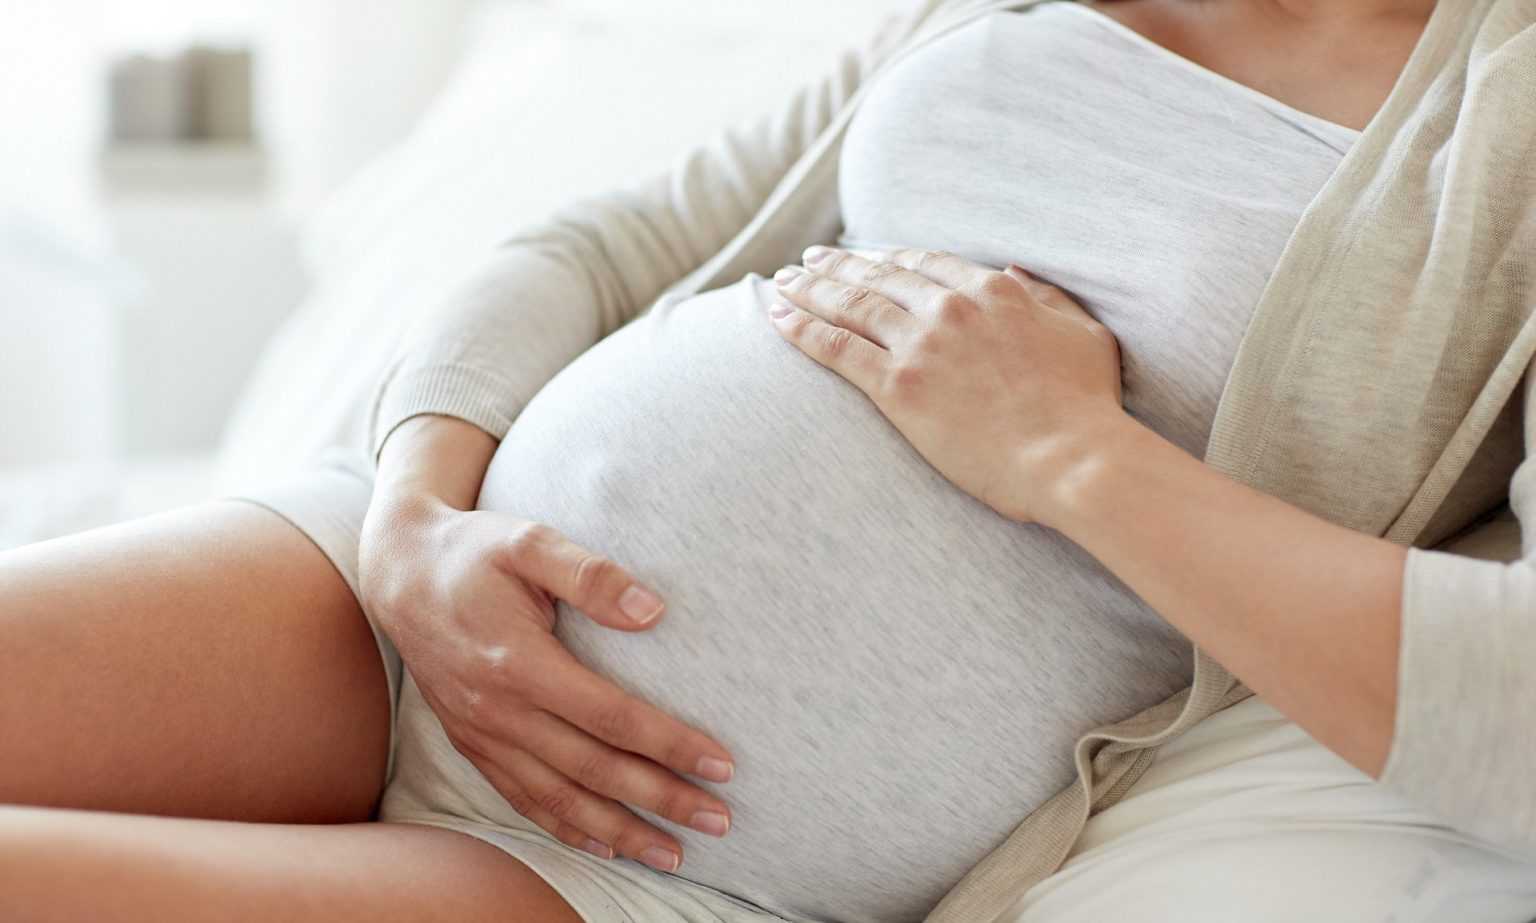 Страхи во время беременности: что пугает будущих мам, как бороться